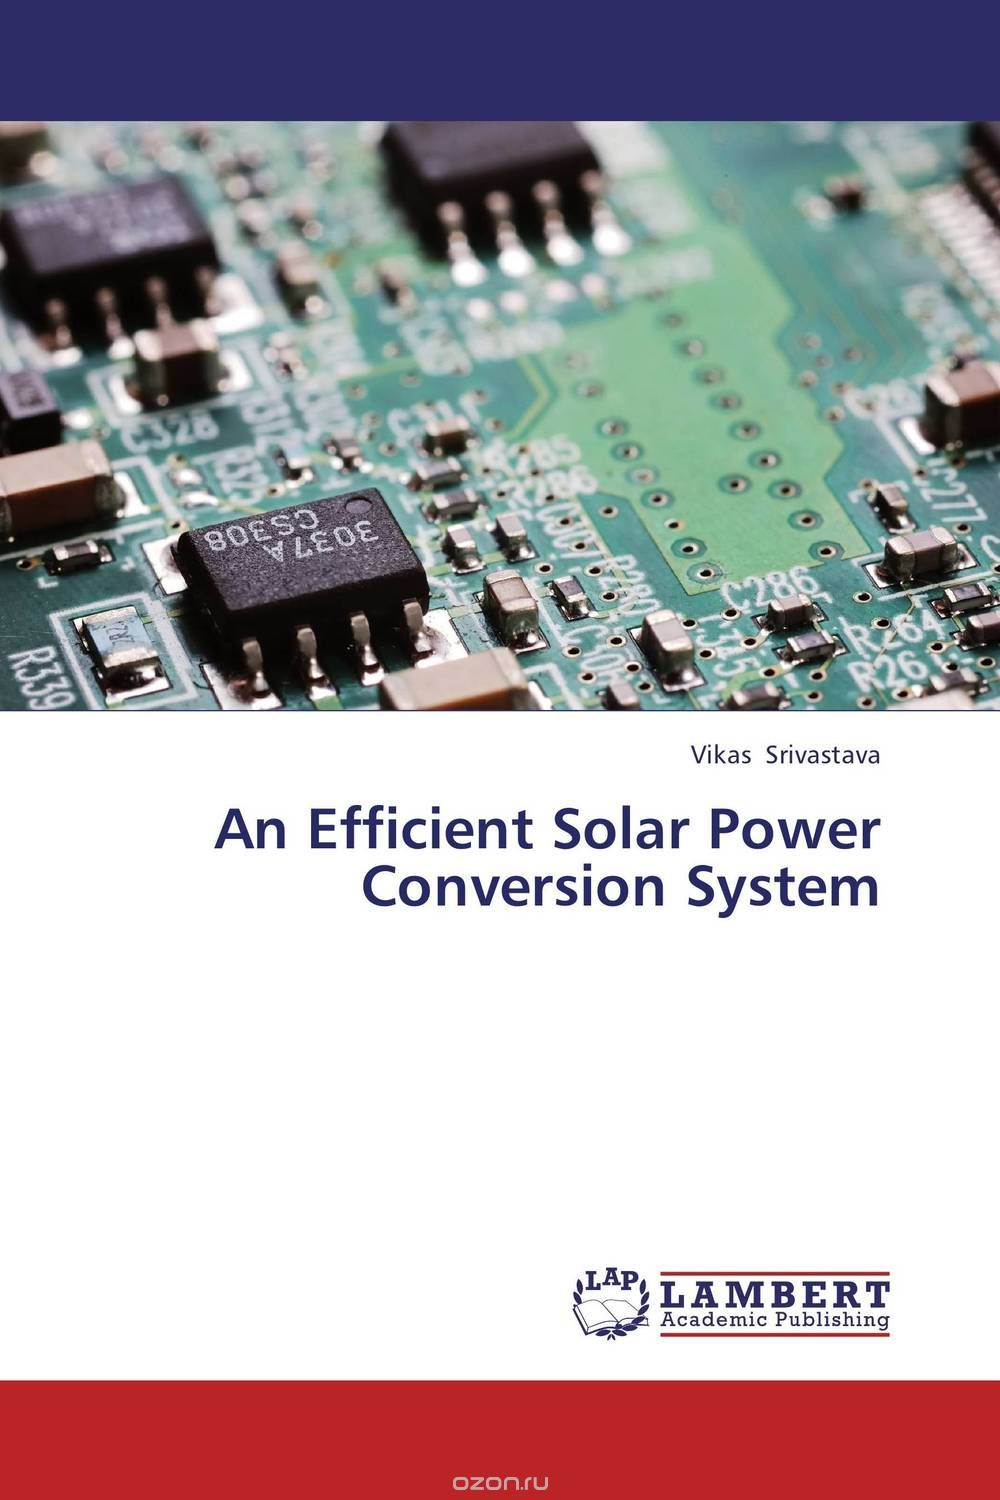 Скачать книгу "An Efficient Solar Power Conversion System"